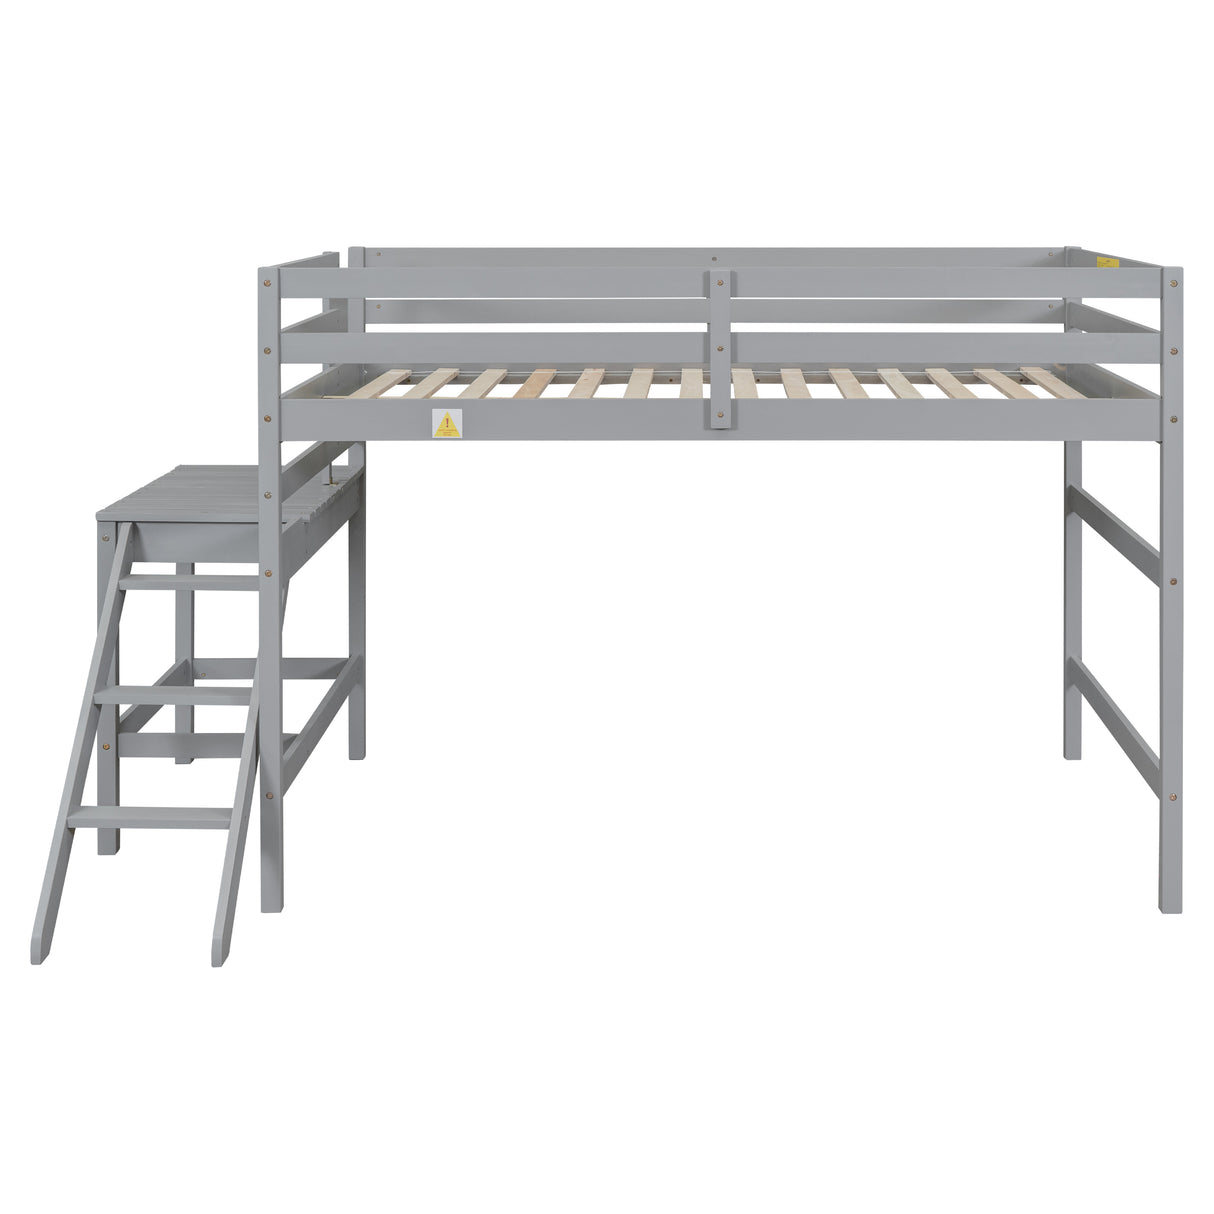 Full Loft Bed with Platform,ladder,Gray - Home Elegance USA